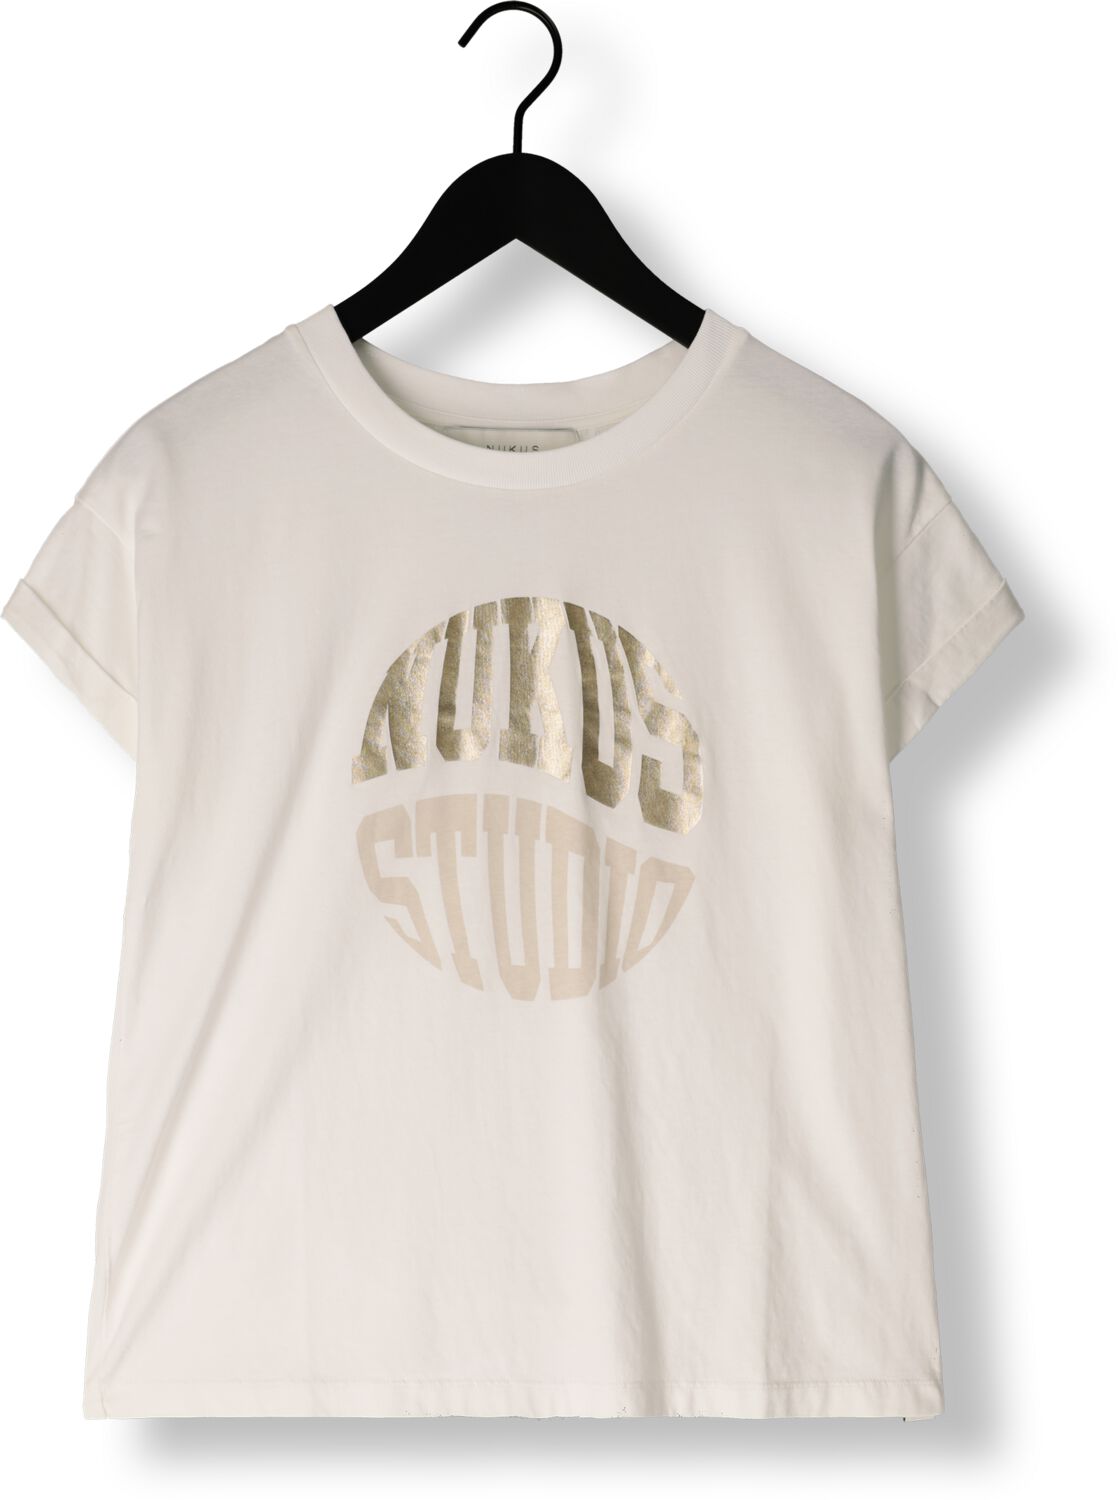 NUKUS Dames Tops & T-shirts Hannah Shirt Wit